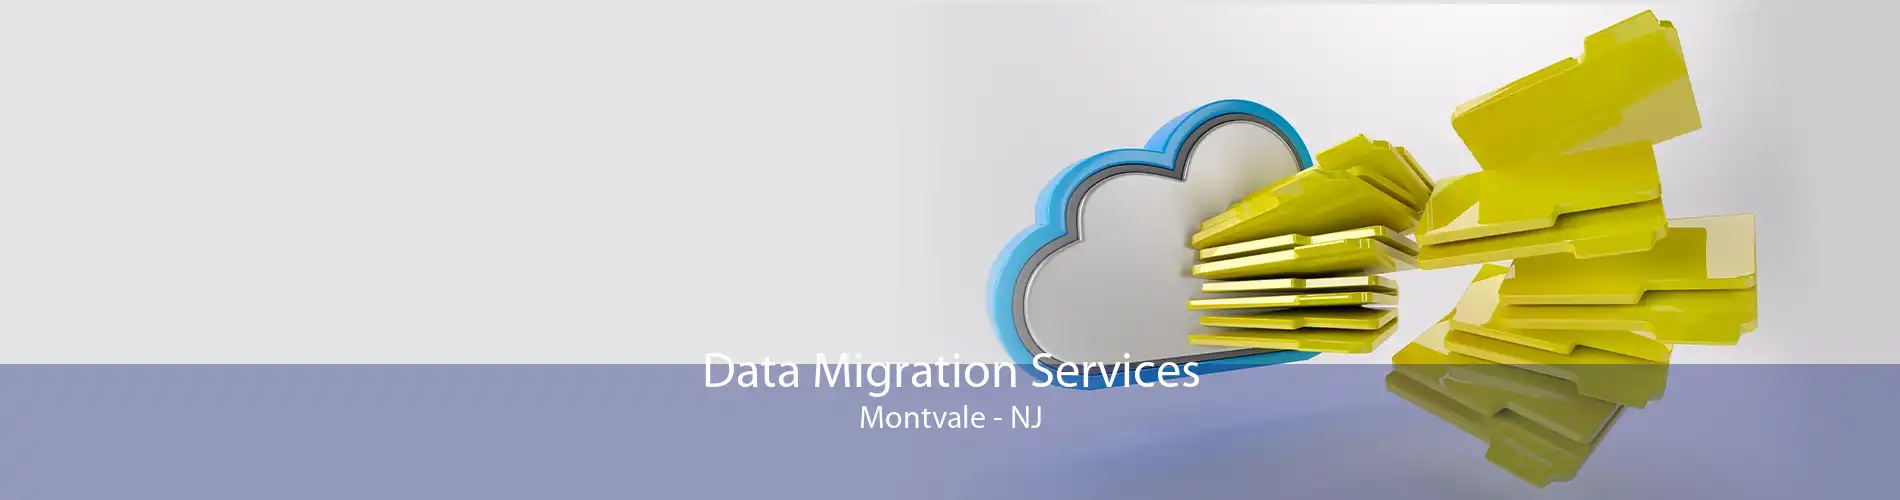 Data Migration Services Montvale - NJ